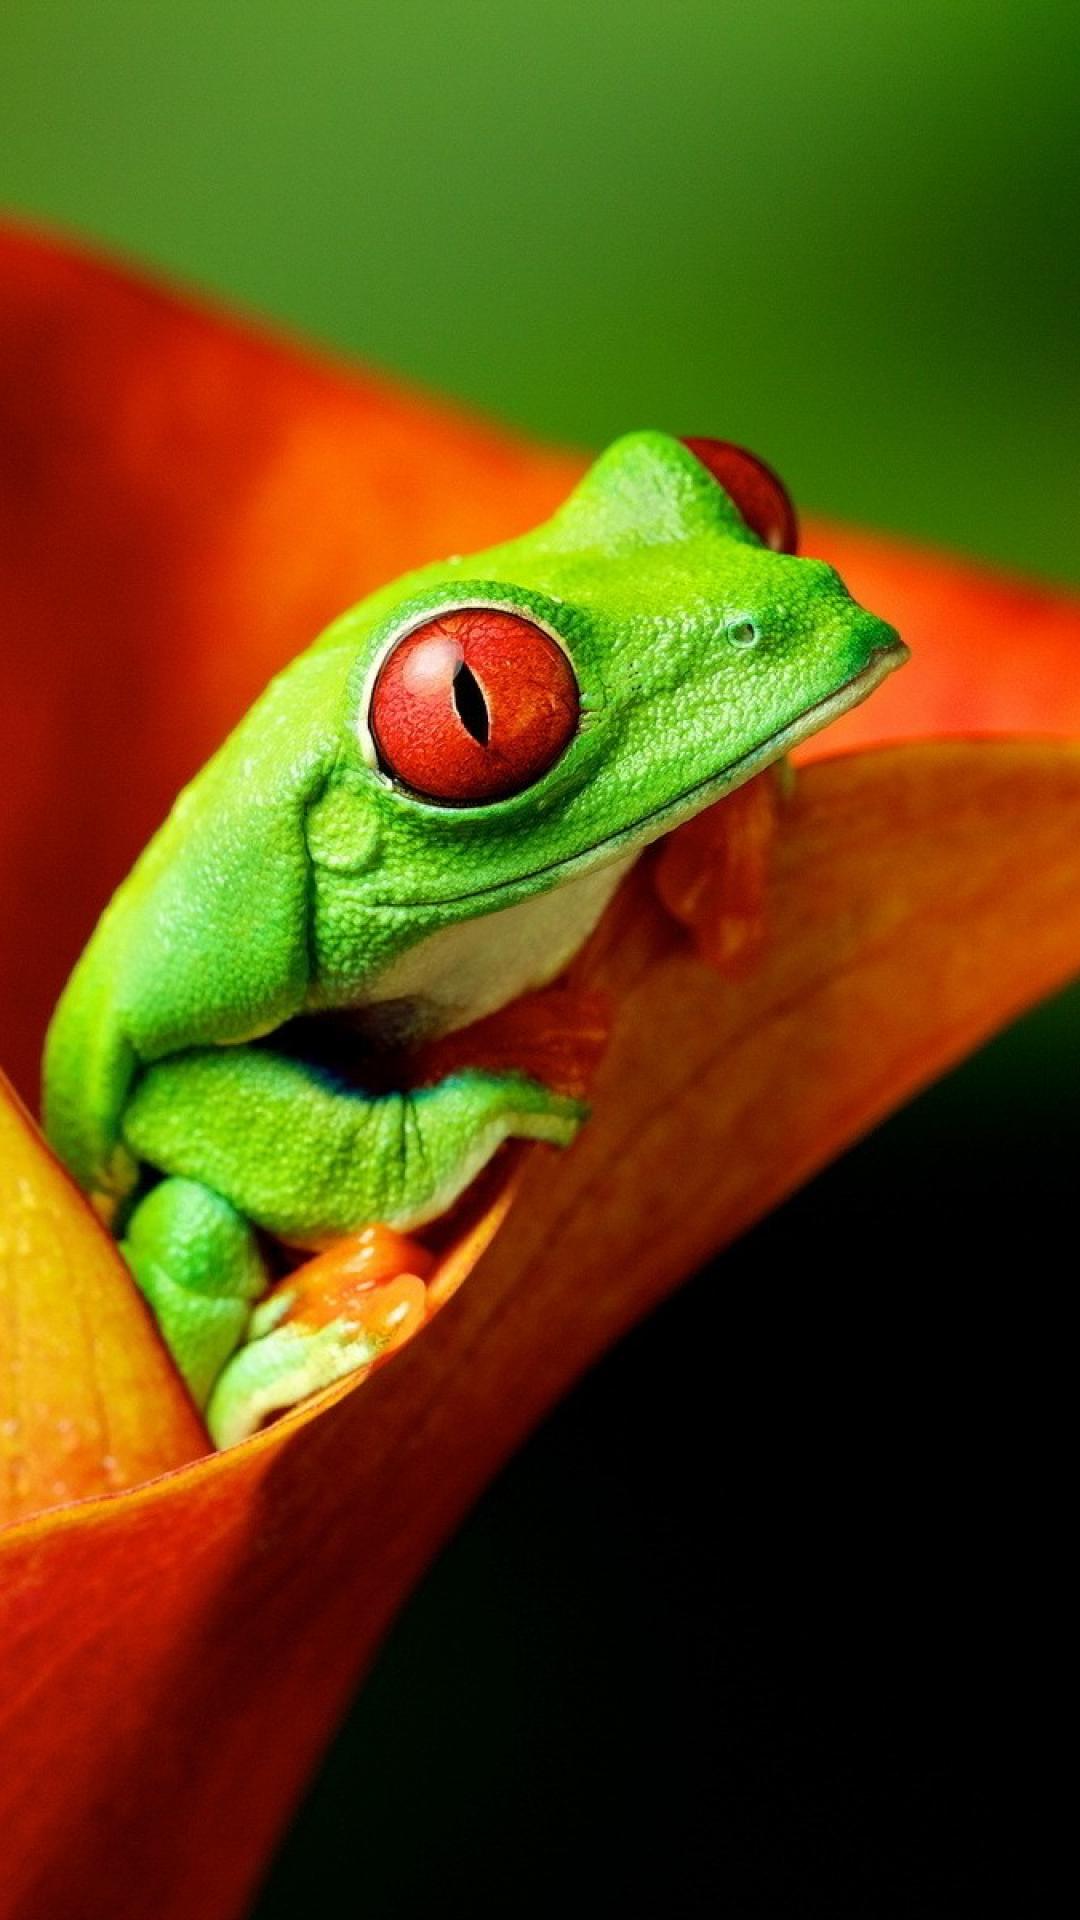 귀여운 개구리 벽지,개구리,청개구리,붉은 외 눈 박이 나무 개구리,청개구리,초록